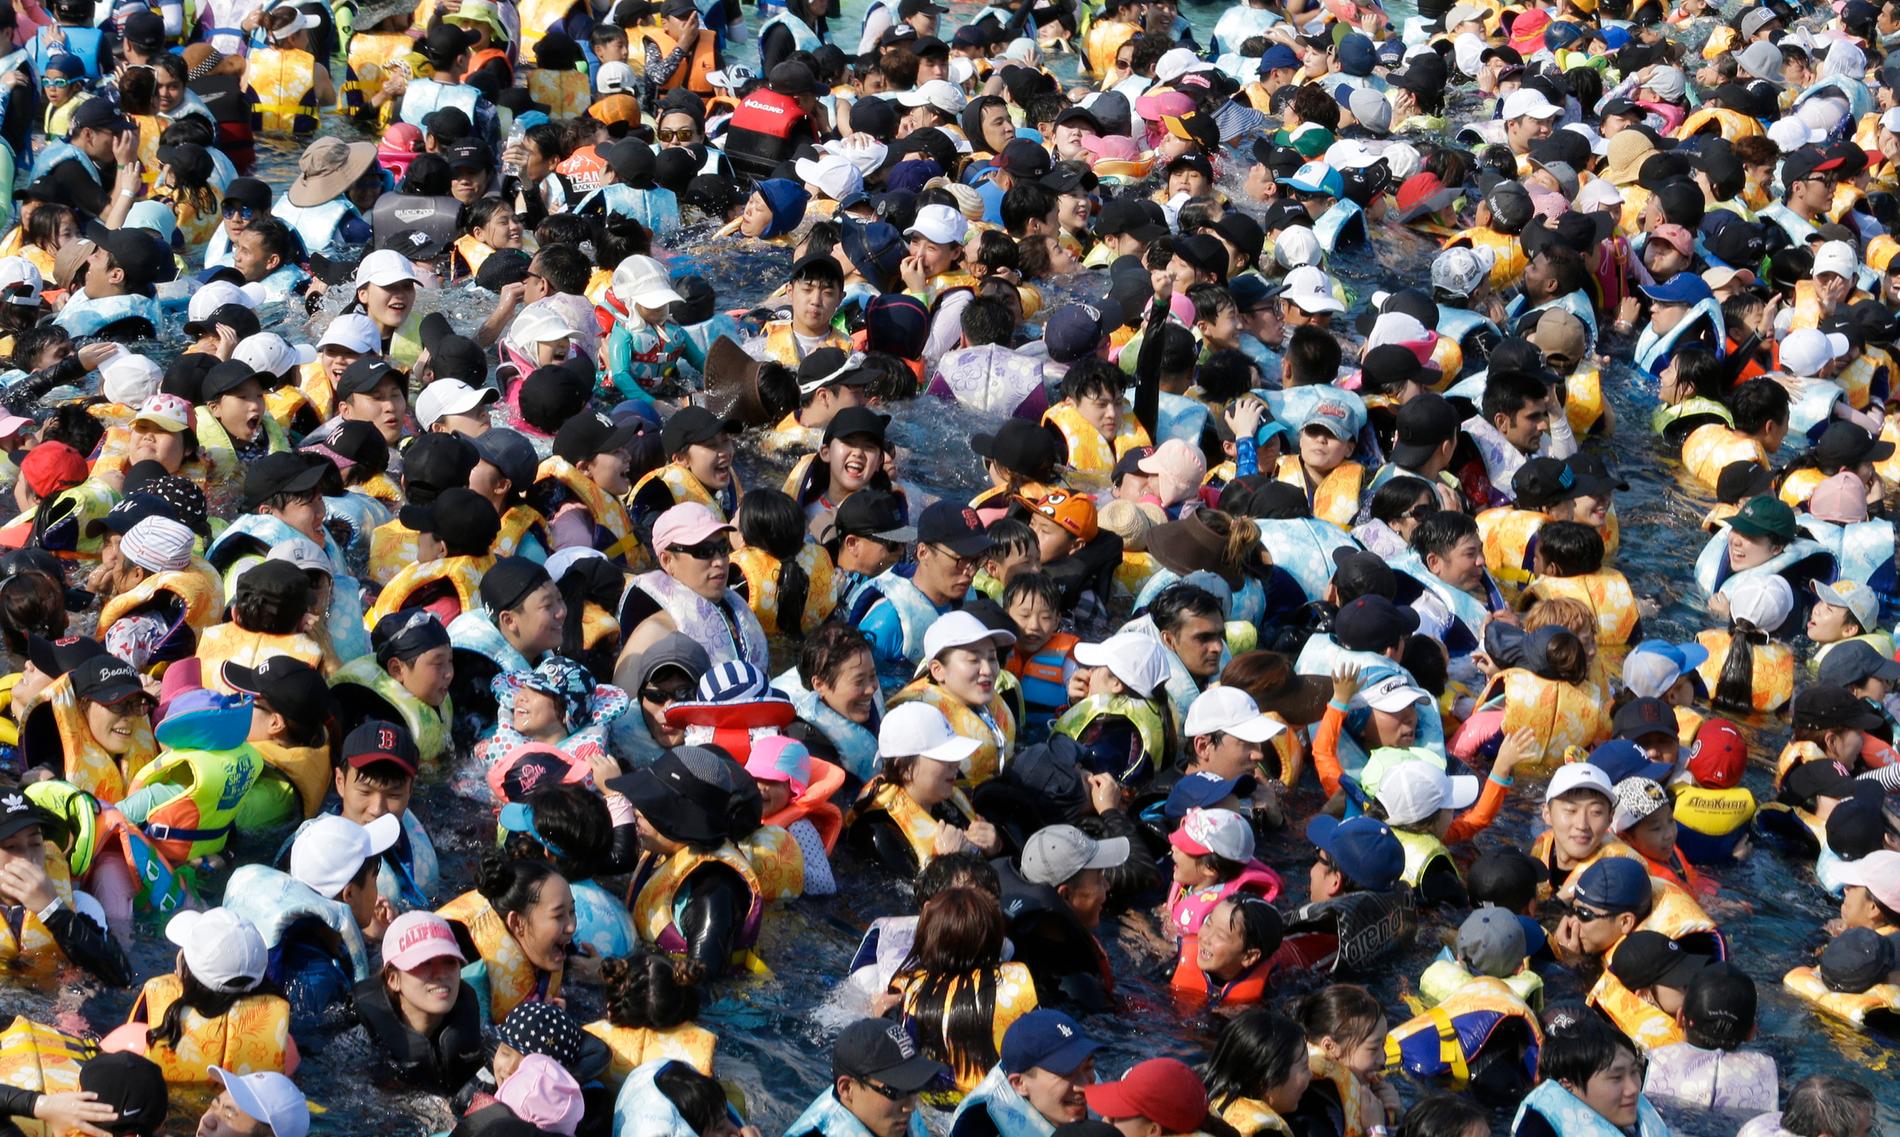 Folkmassa som försöker undvika värmen i en stor swimmingpool kallad ”Caribbean Bay” i Yongin, Sydkorea, torsdagen den 2 augusti 2018. 